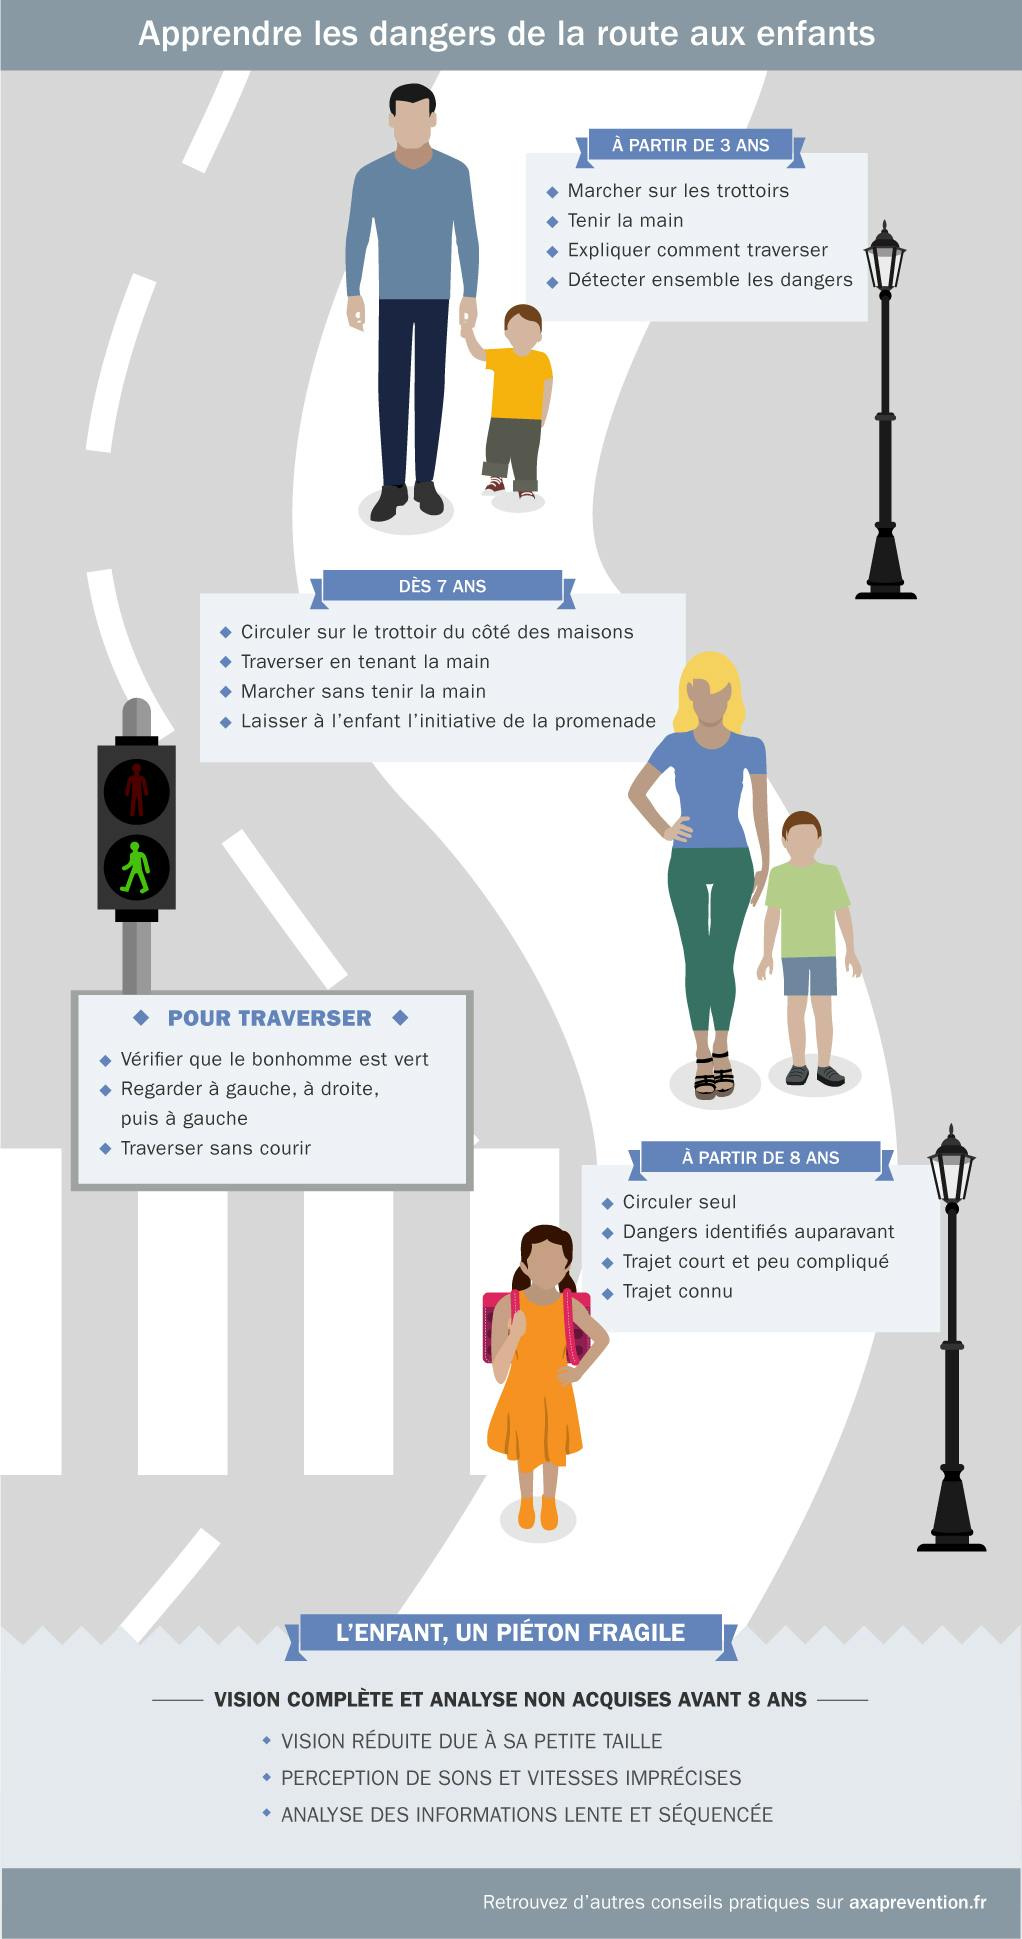 Illustration des conseils pour apprendre les dangers de la route aux enfants